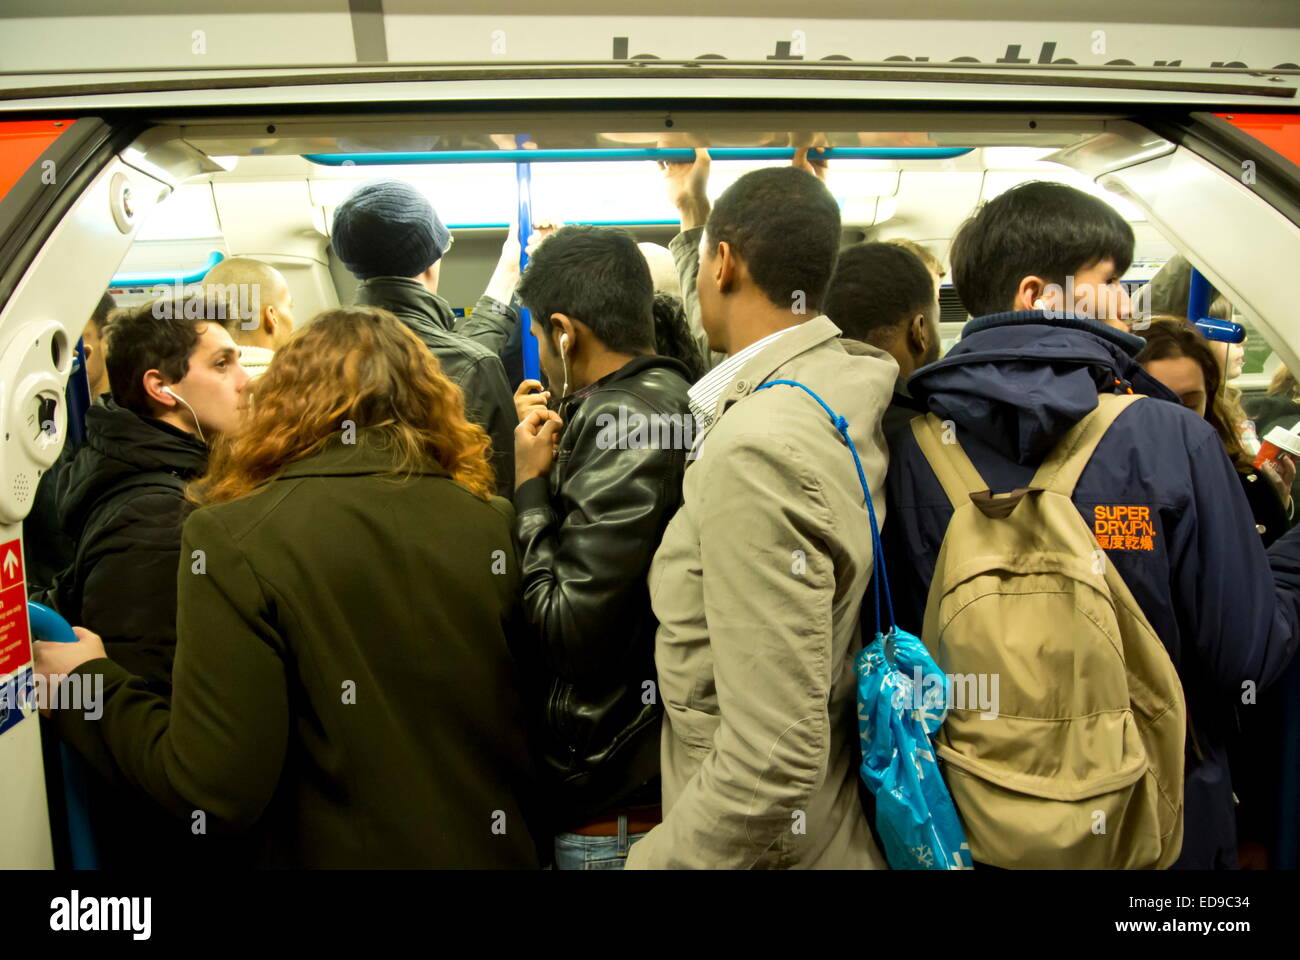 La foule des banlieusards bord d'un train du métro de Londres à Oxford Circus gare sur la ligne Victoria, London, UK Banque D'Images